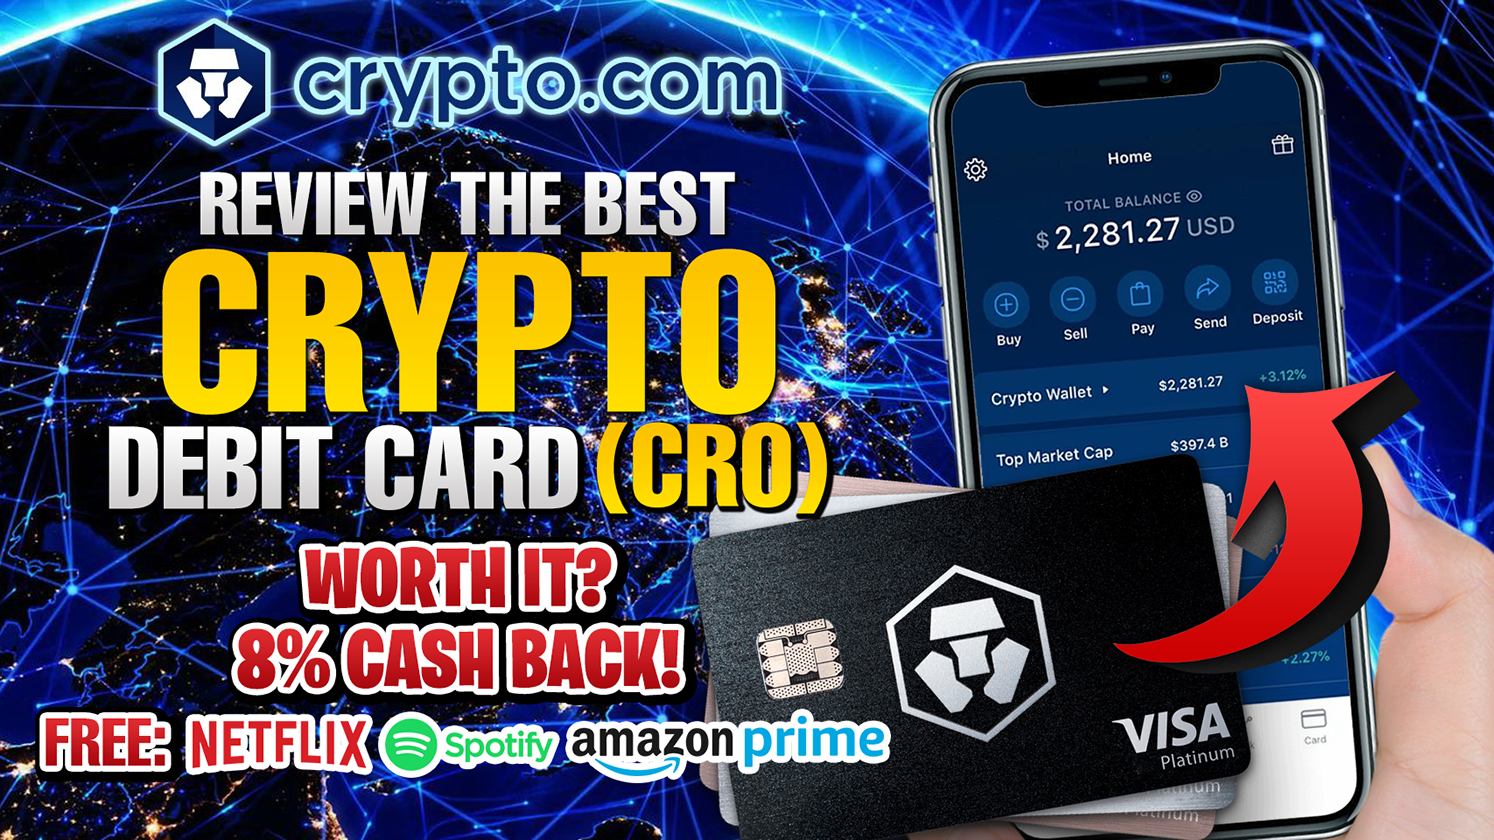 how to get new crypto.com card